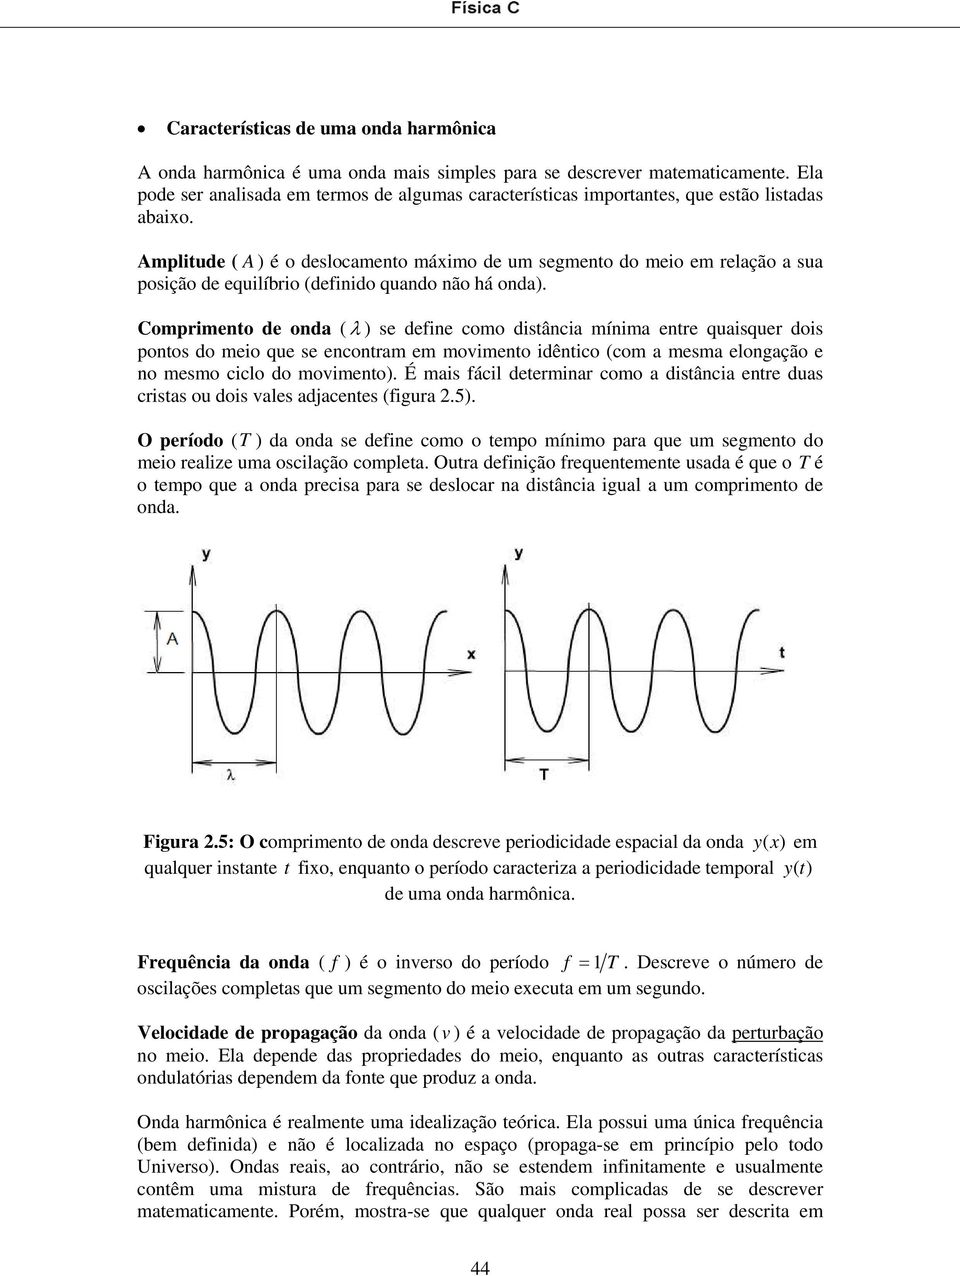 Amplitude ( A ) é o deslocamento máximo de um segmento do meio em relação a sua posição de equilíbrio (definido quando não há onda).